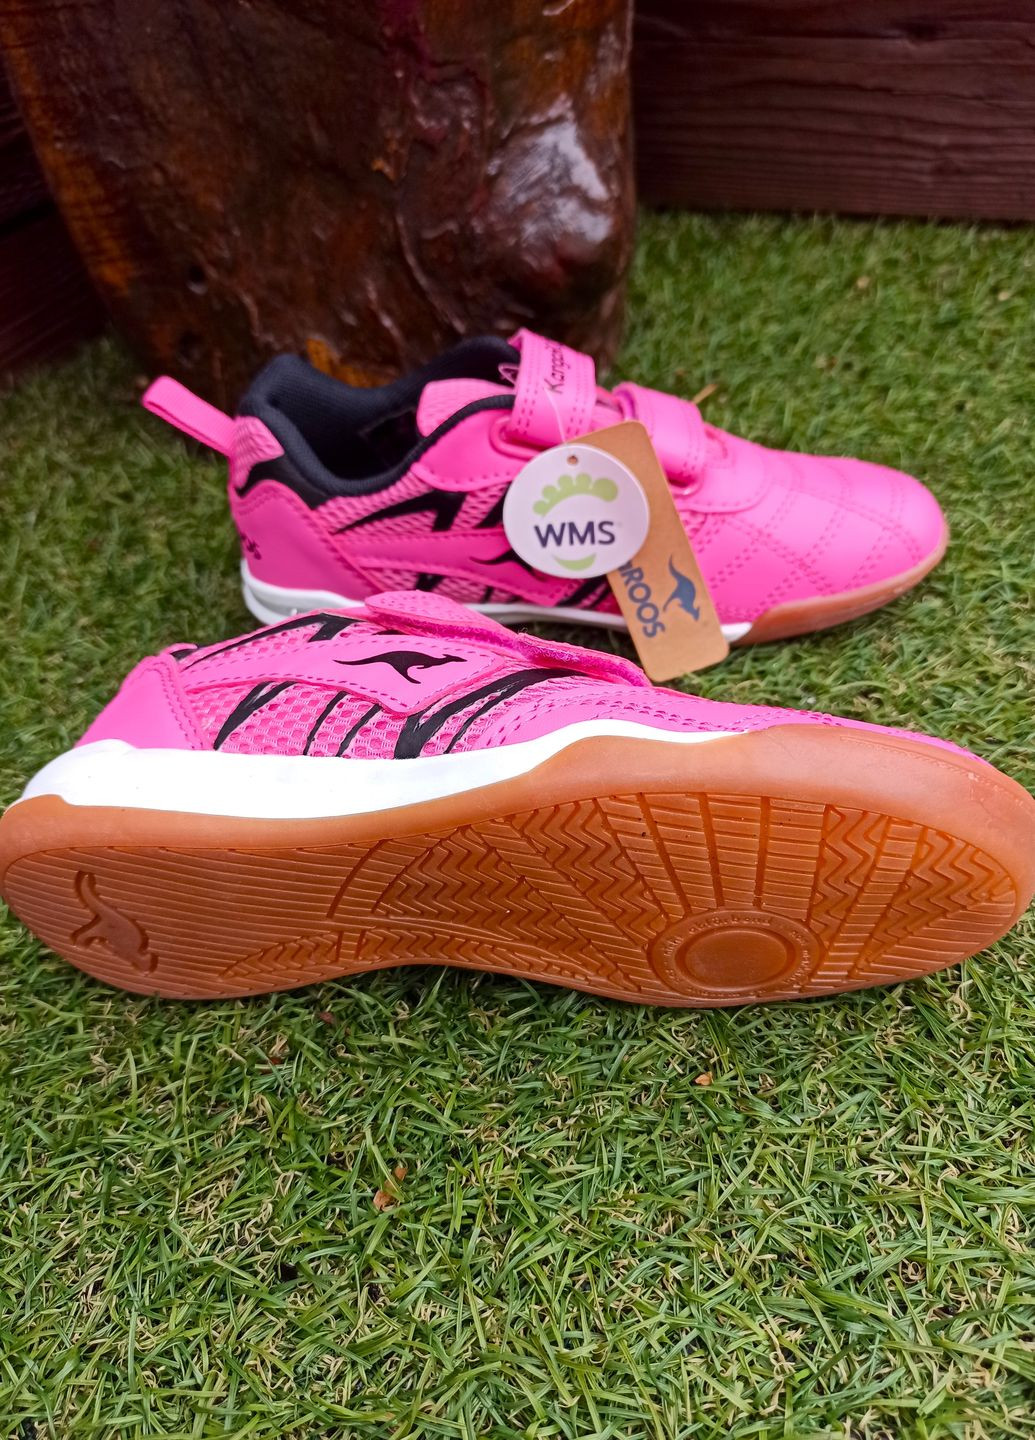 Рожеві всесезонні кросівки дитячі для дівчинки 18332/6122 рожеві футзал (32) Kangaroos